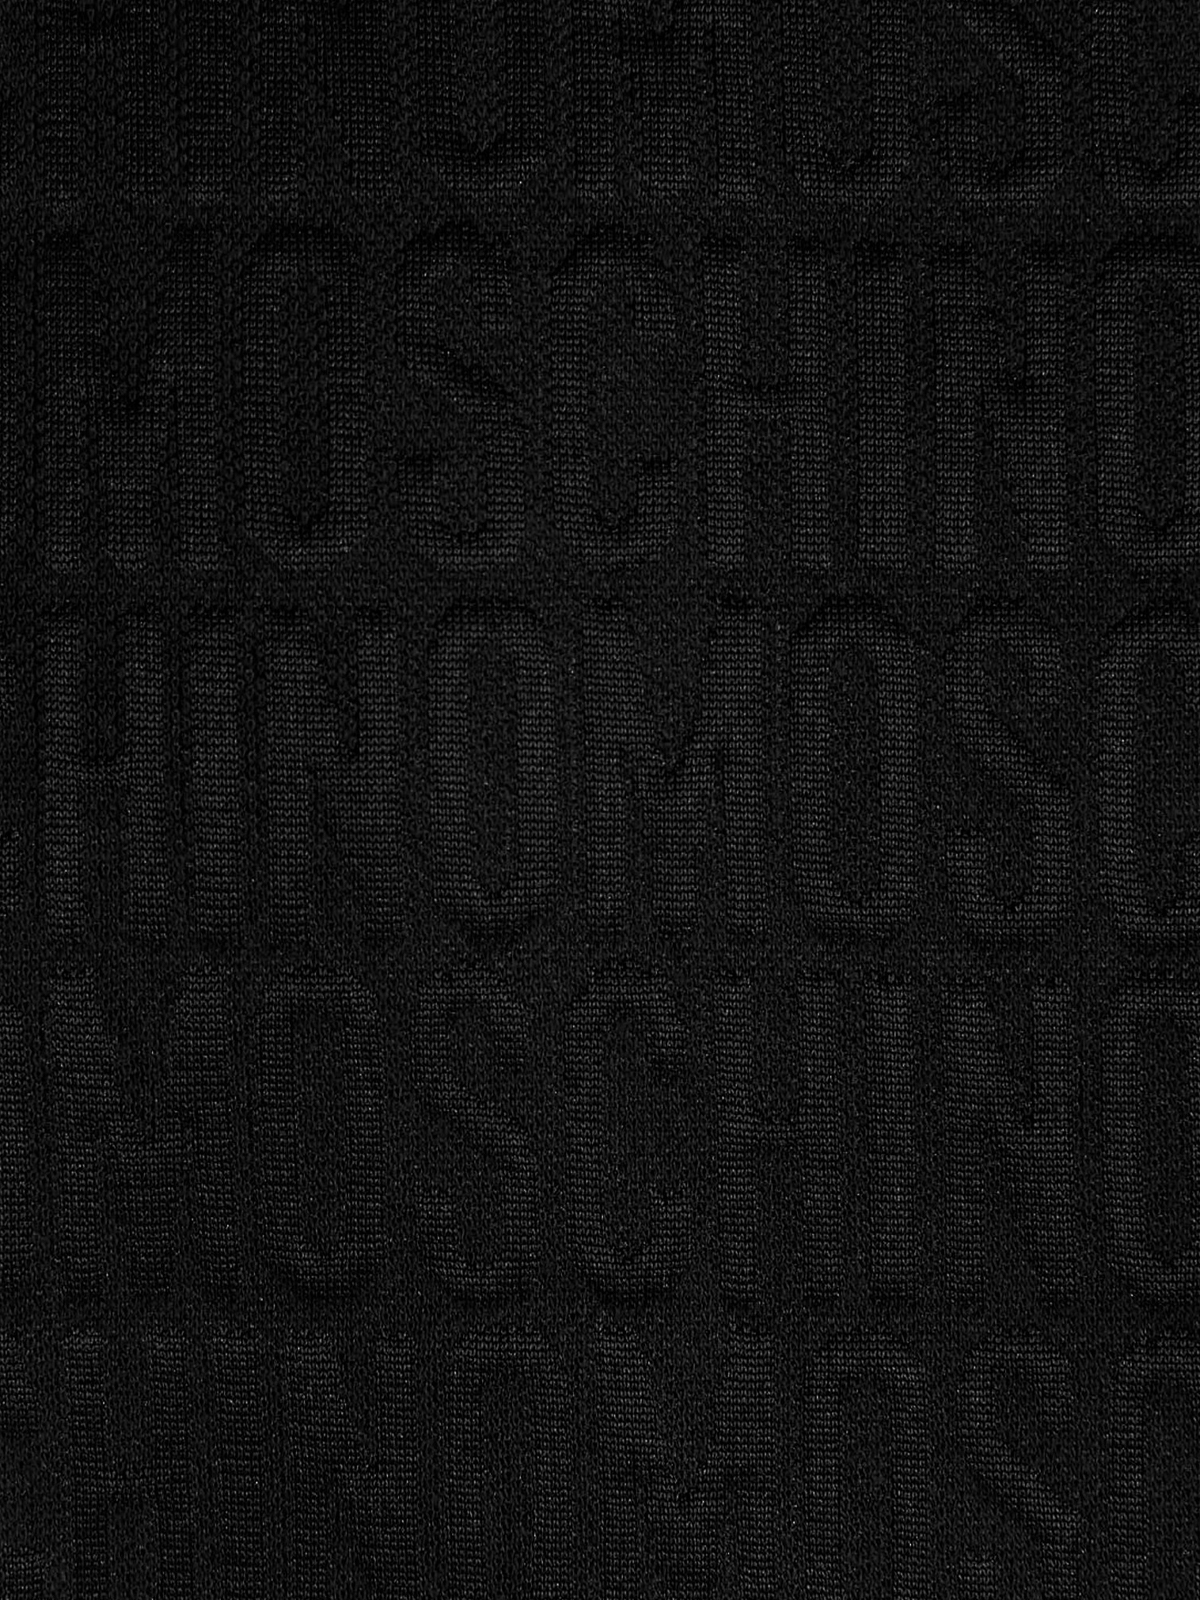 Sweatshirts & Sweaters Moschino - Monogram sweatshirt - 170126290555